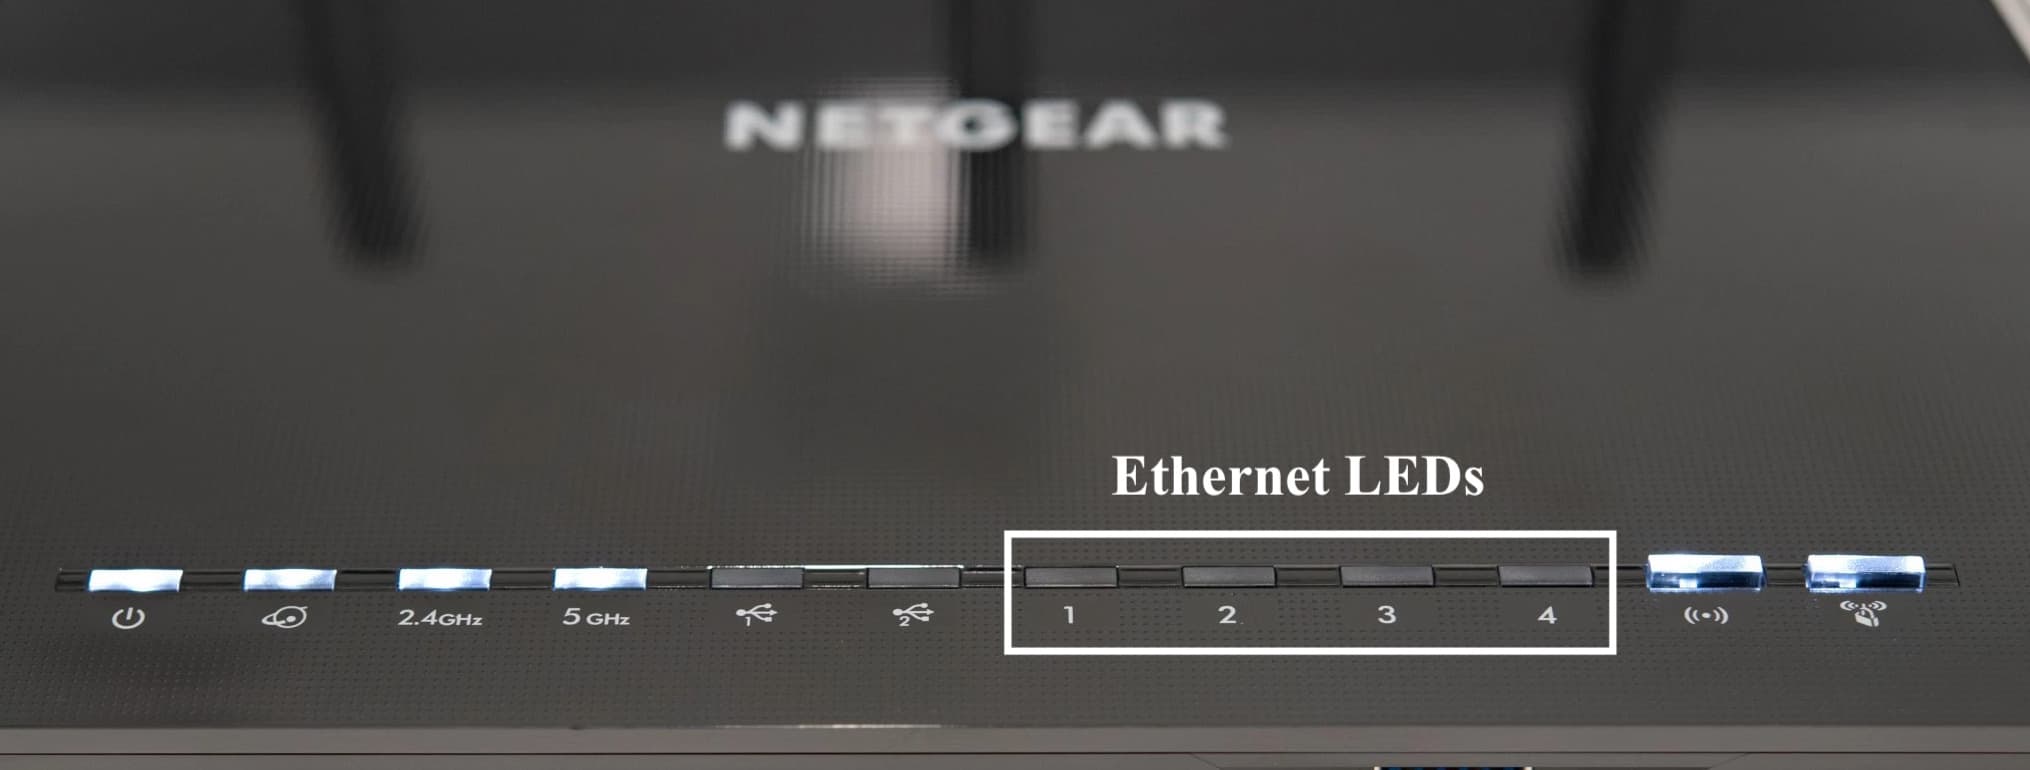 Ethernet LEDs on Netgear Router